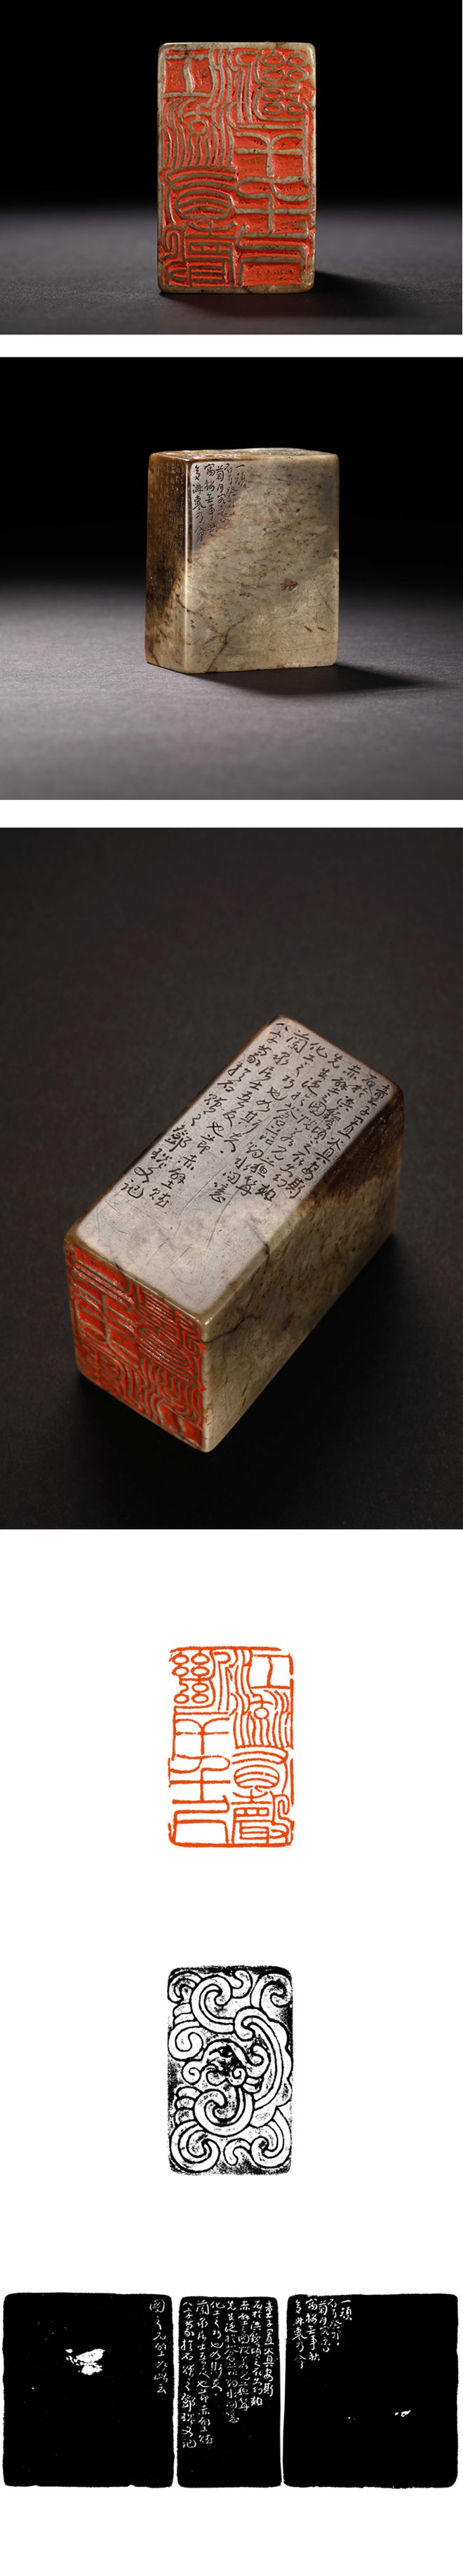 清代小篆在笔法上的创新可谓书法史上里程碑